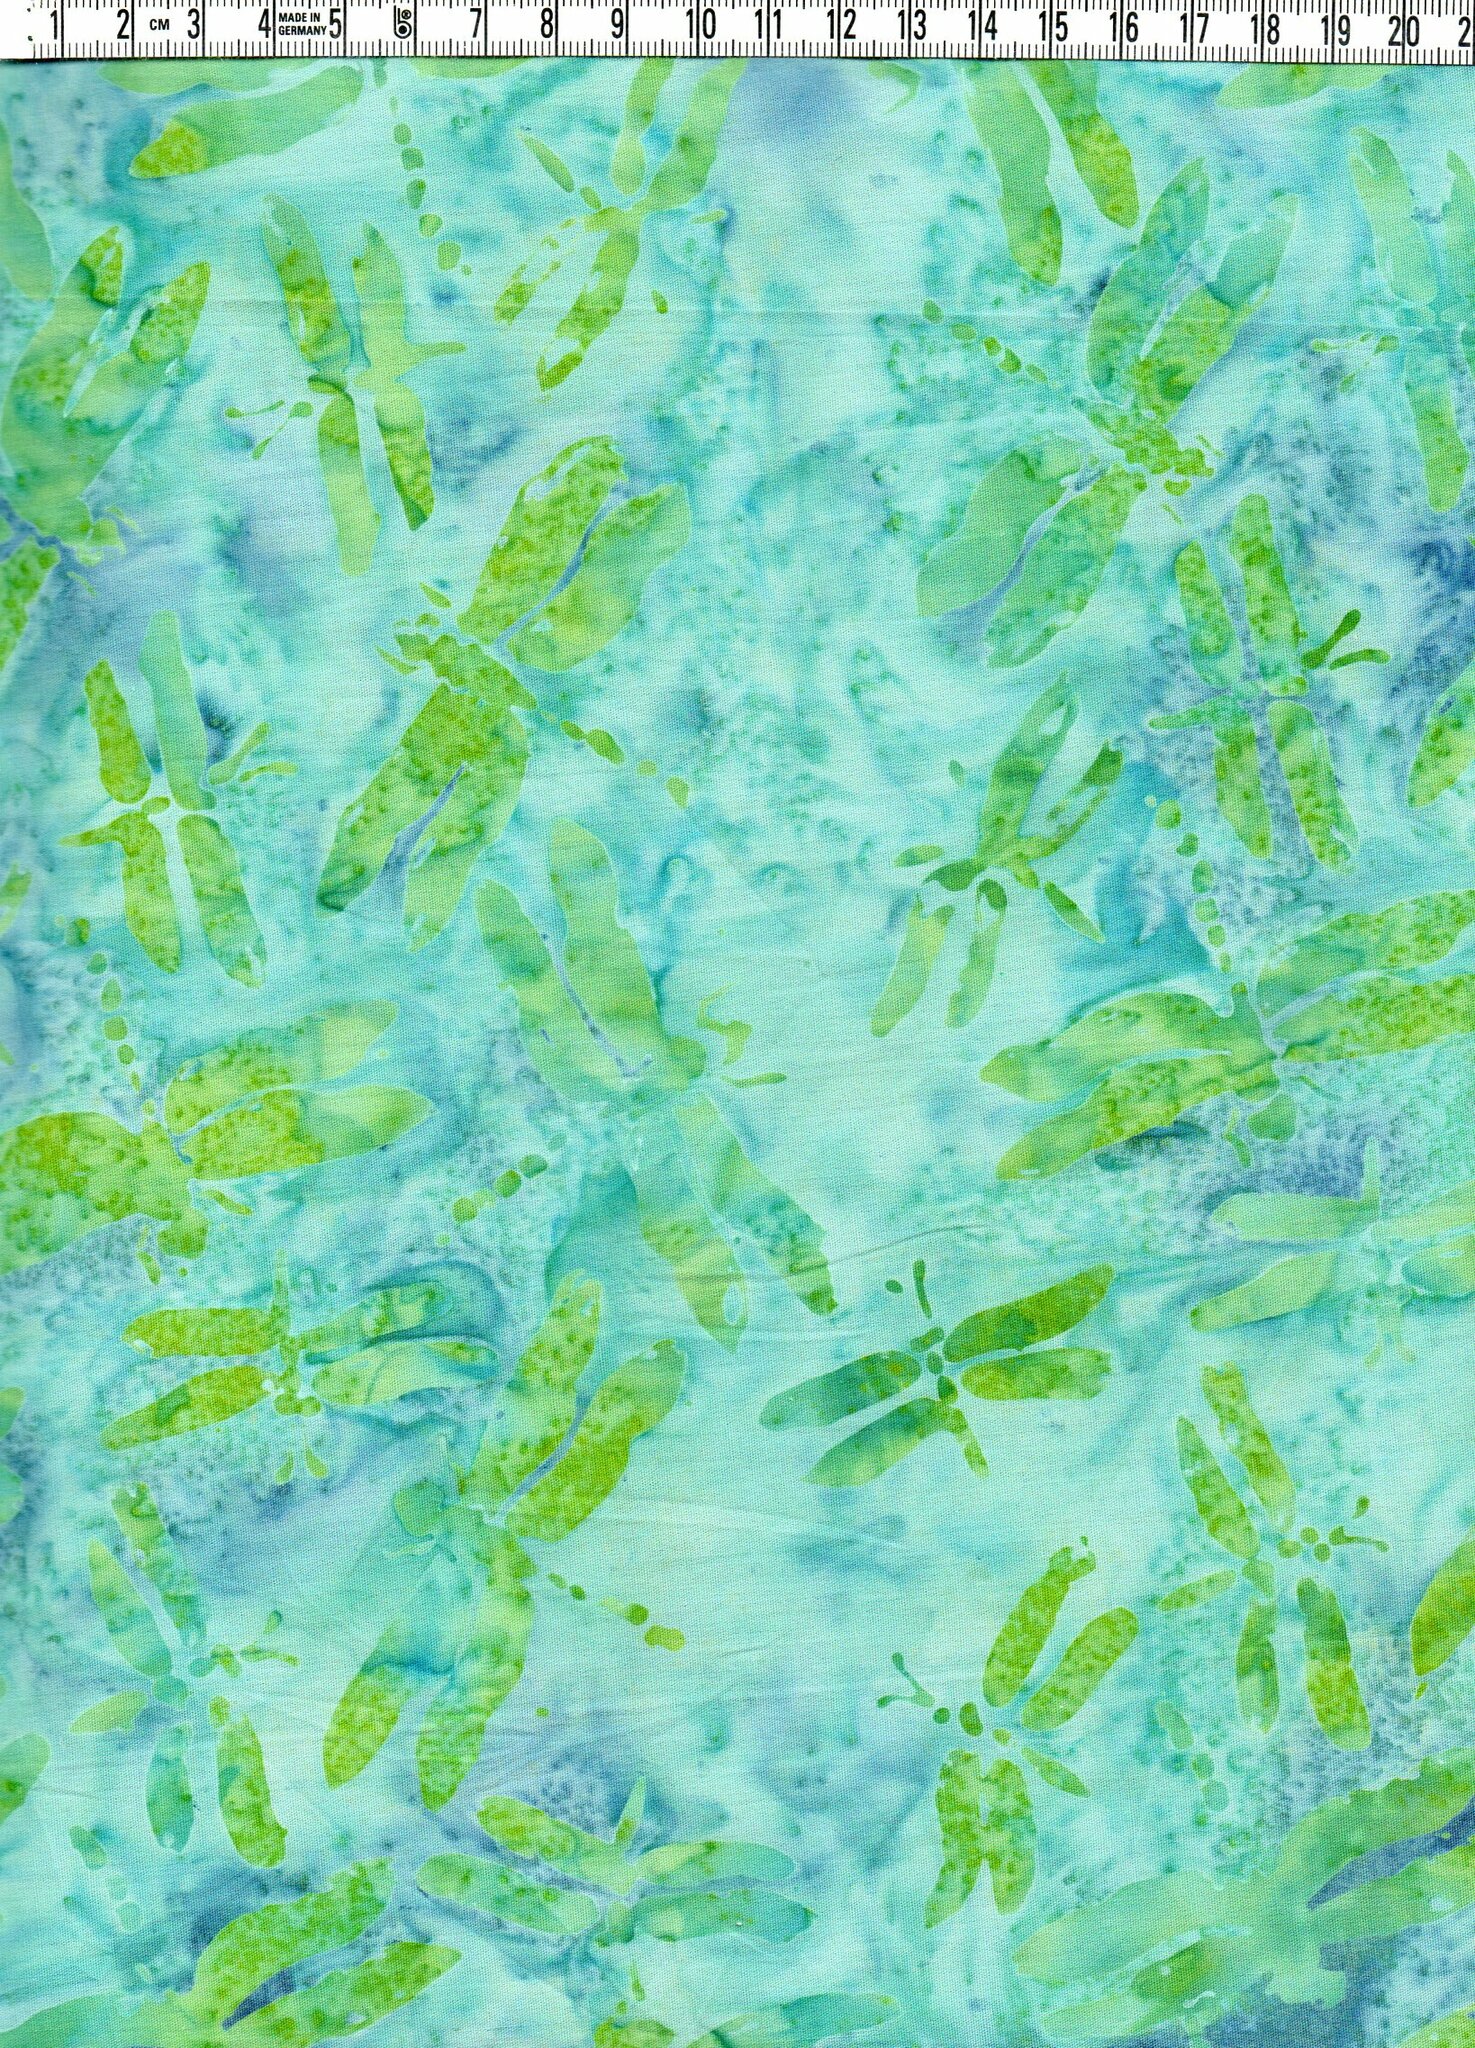 Trollsländor i gröna toner på blåturkos bakgrund